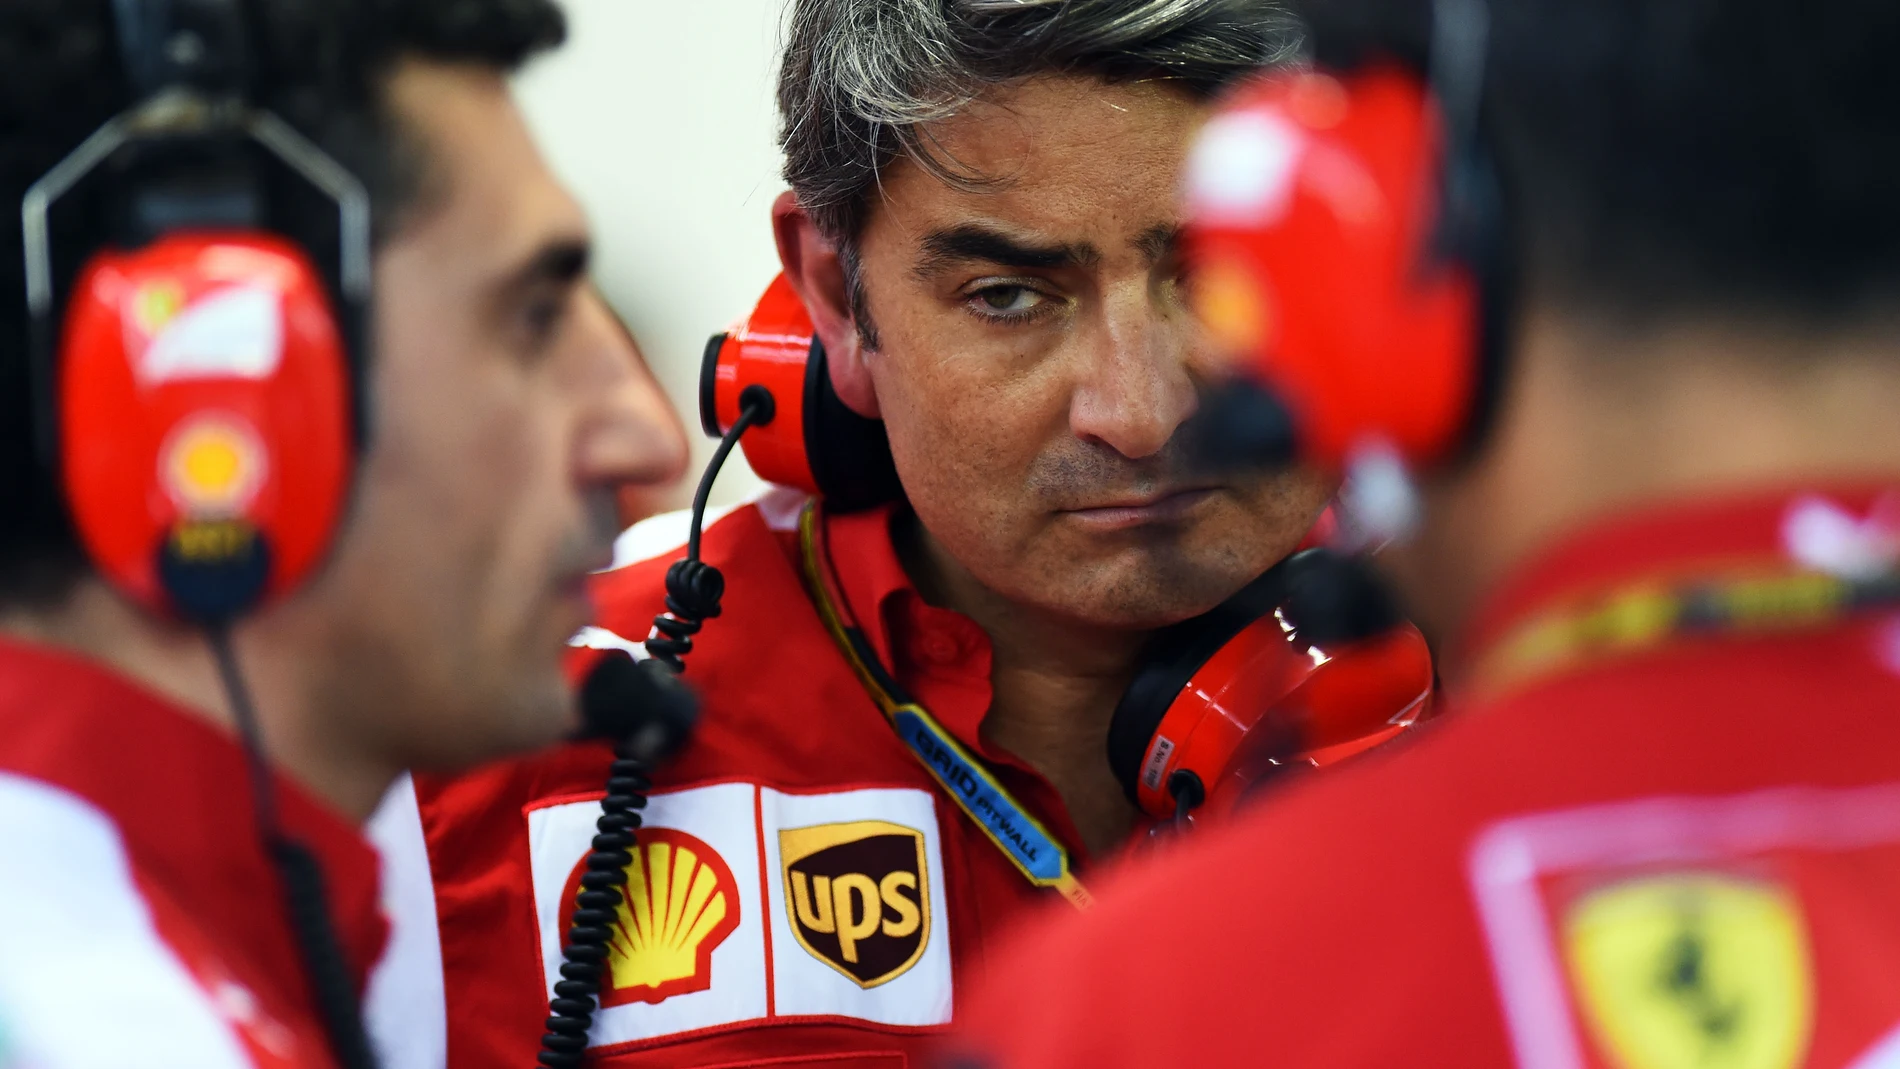 Mattiacci, en el box de Ferrari